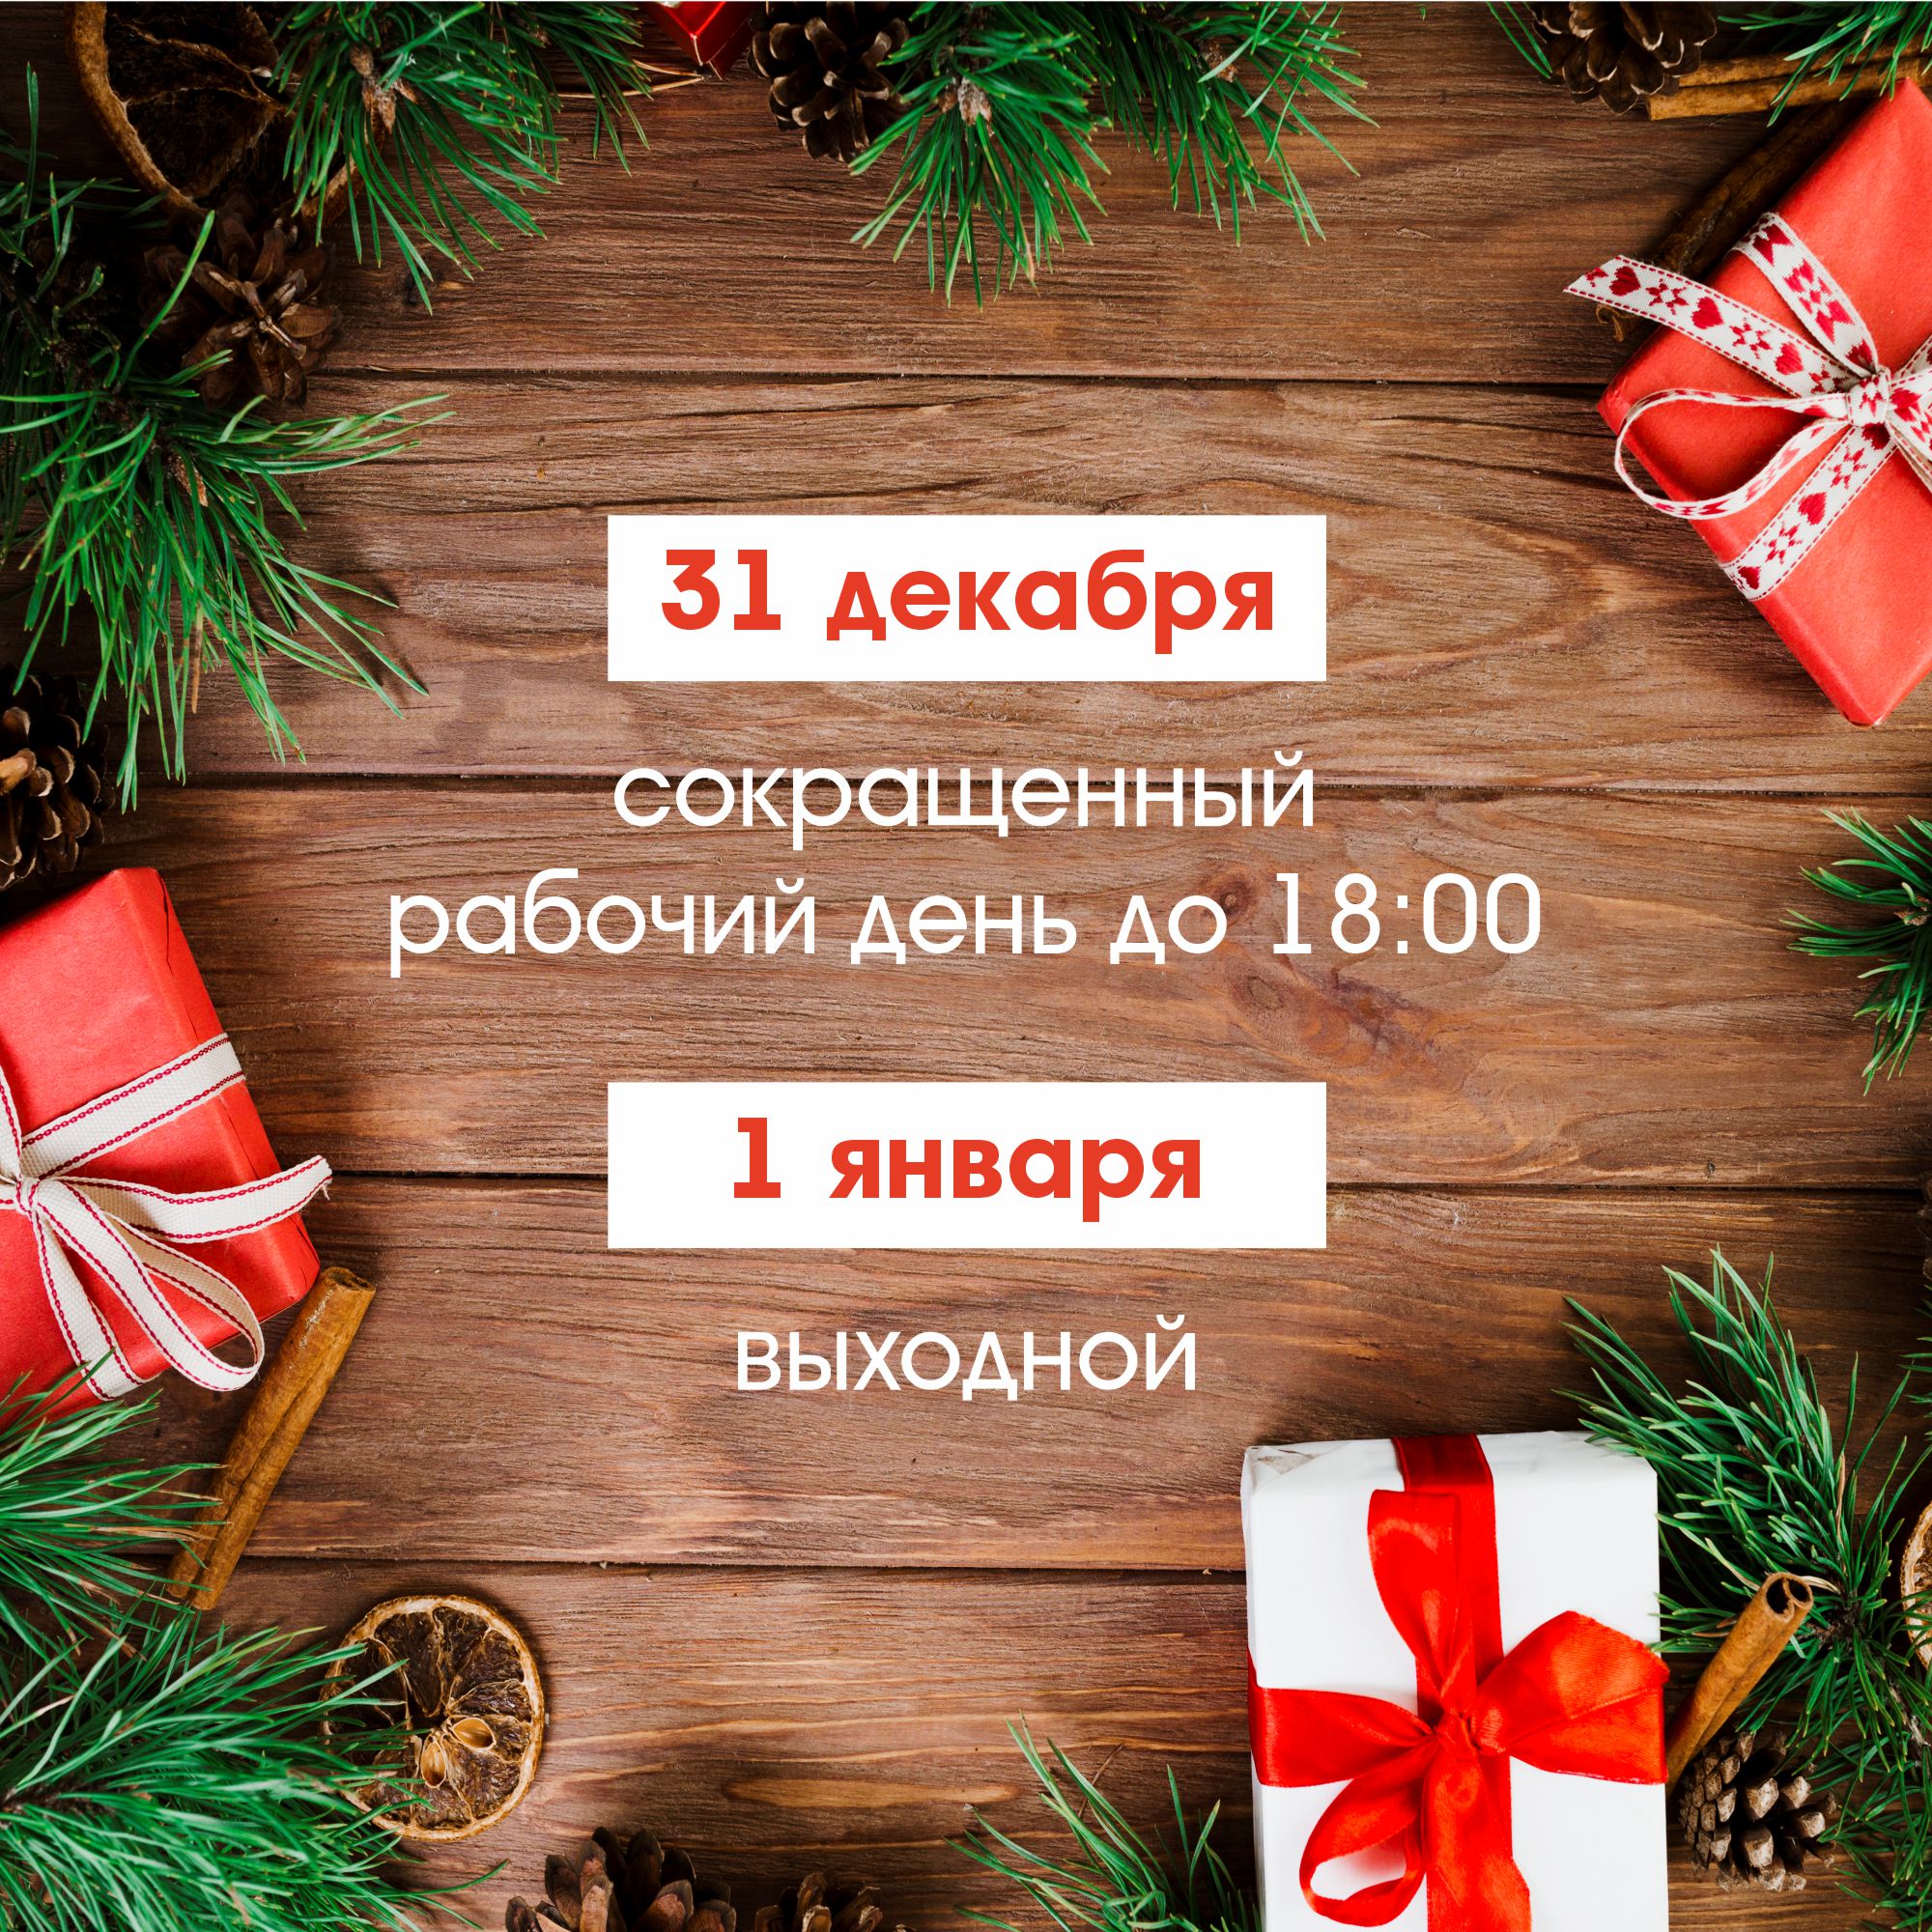 Режим работы магазинов фирменной сети «Акашево» в новогодние праздники